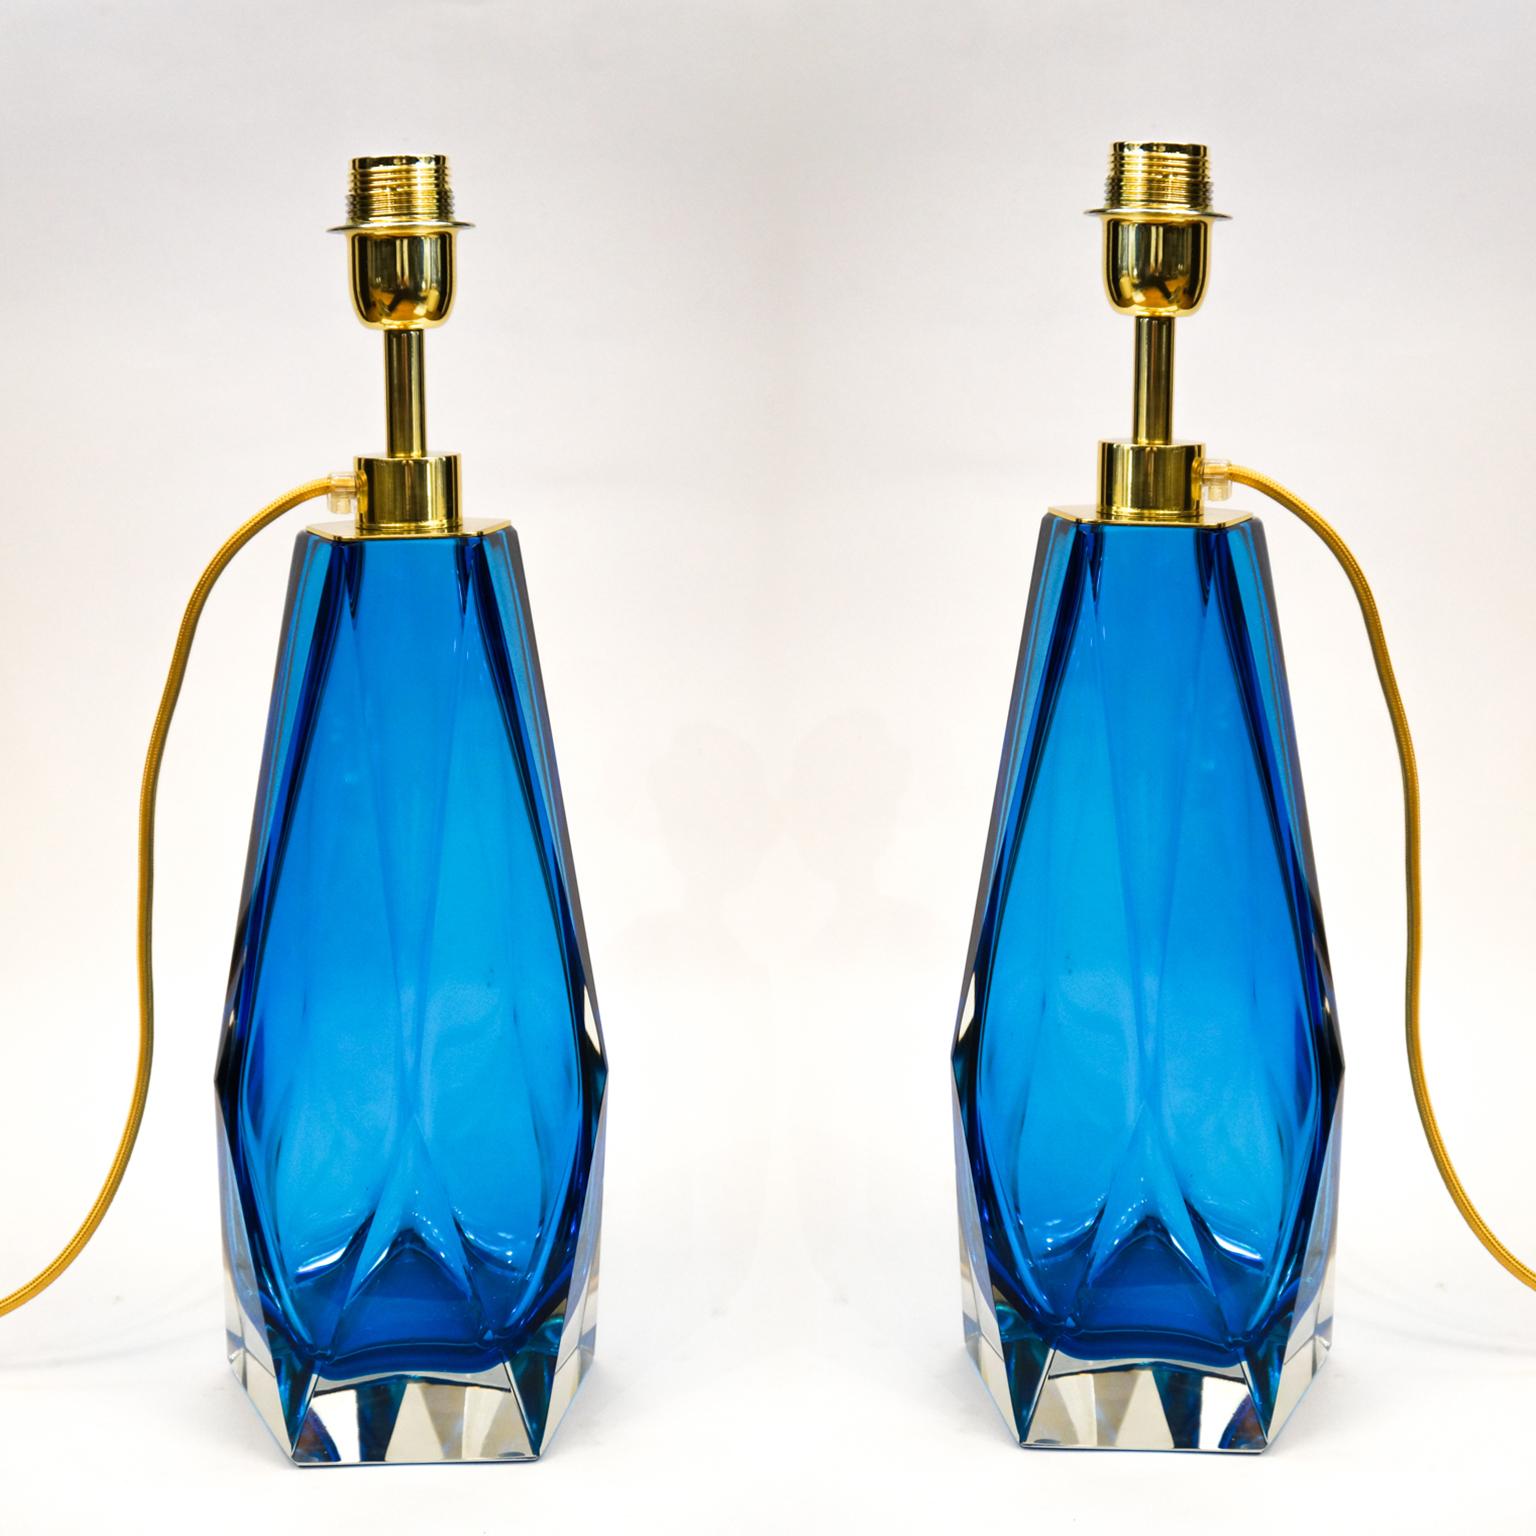 Diese Tischlampe ist Teil der Kollektion des Glasmeisters Alberto Donà, die drei Lampen in verschiedenen Größen umfasst, die 